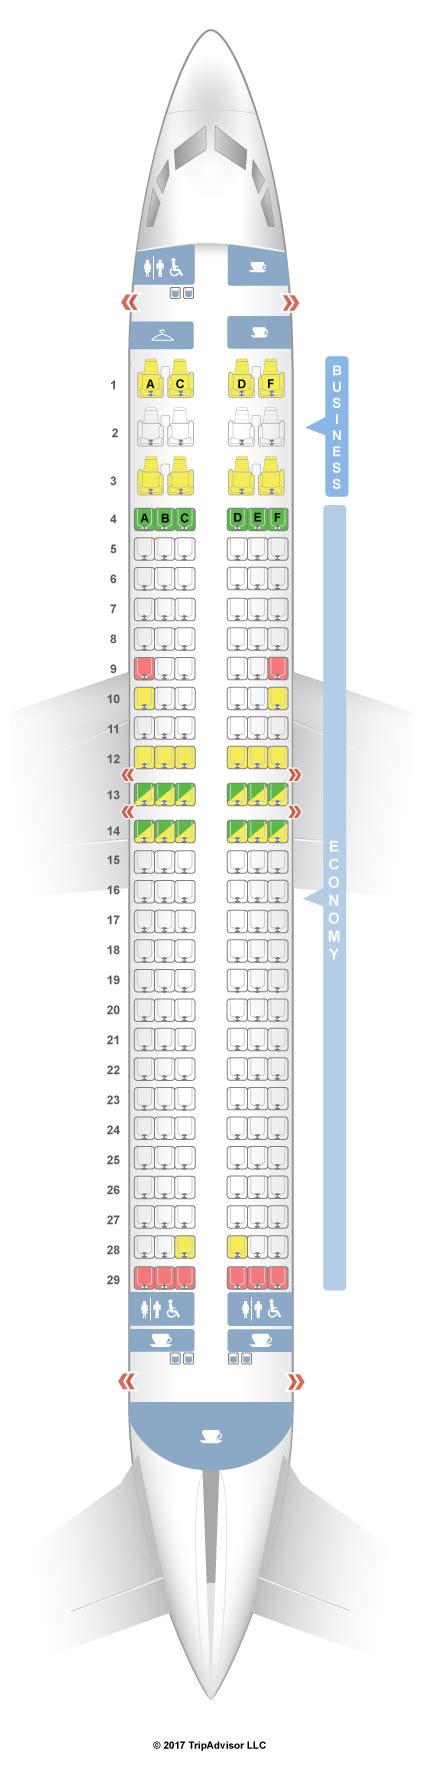 qantas boeing 737-800 seat map